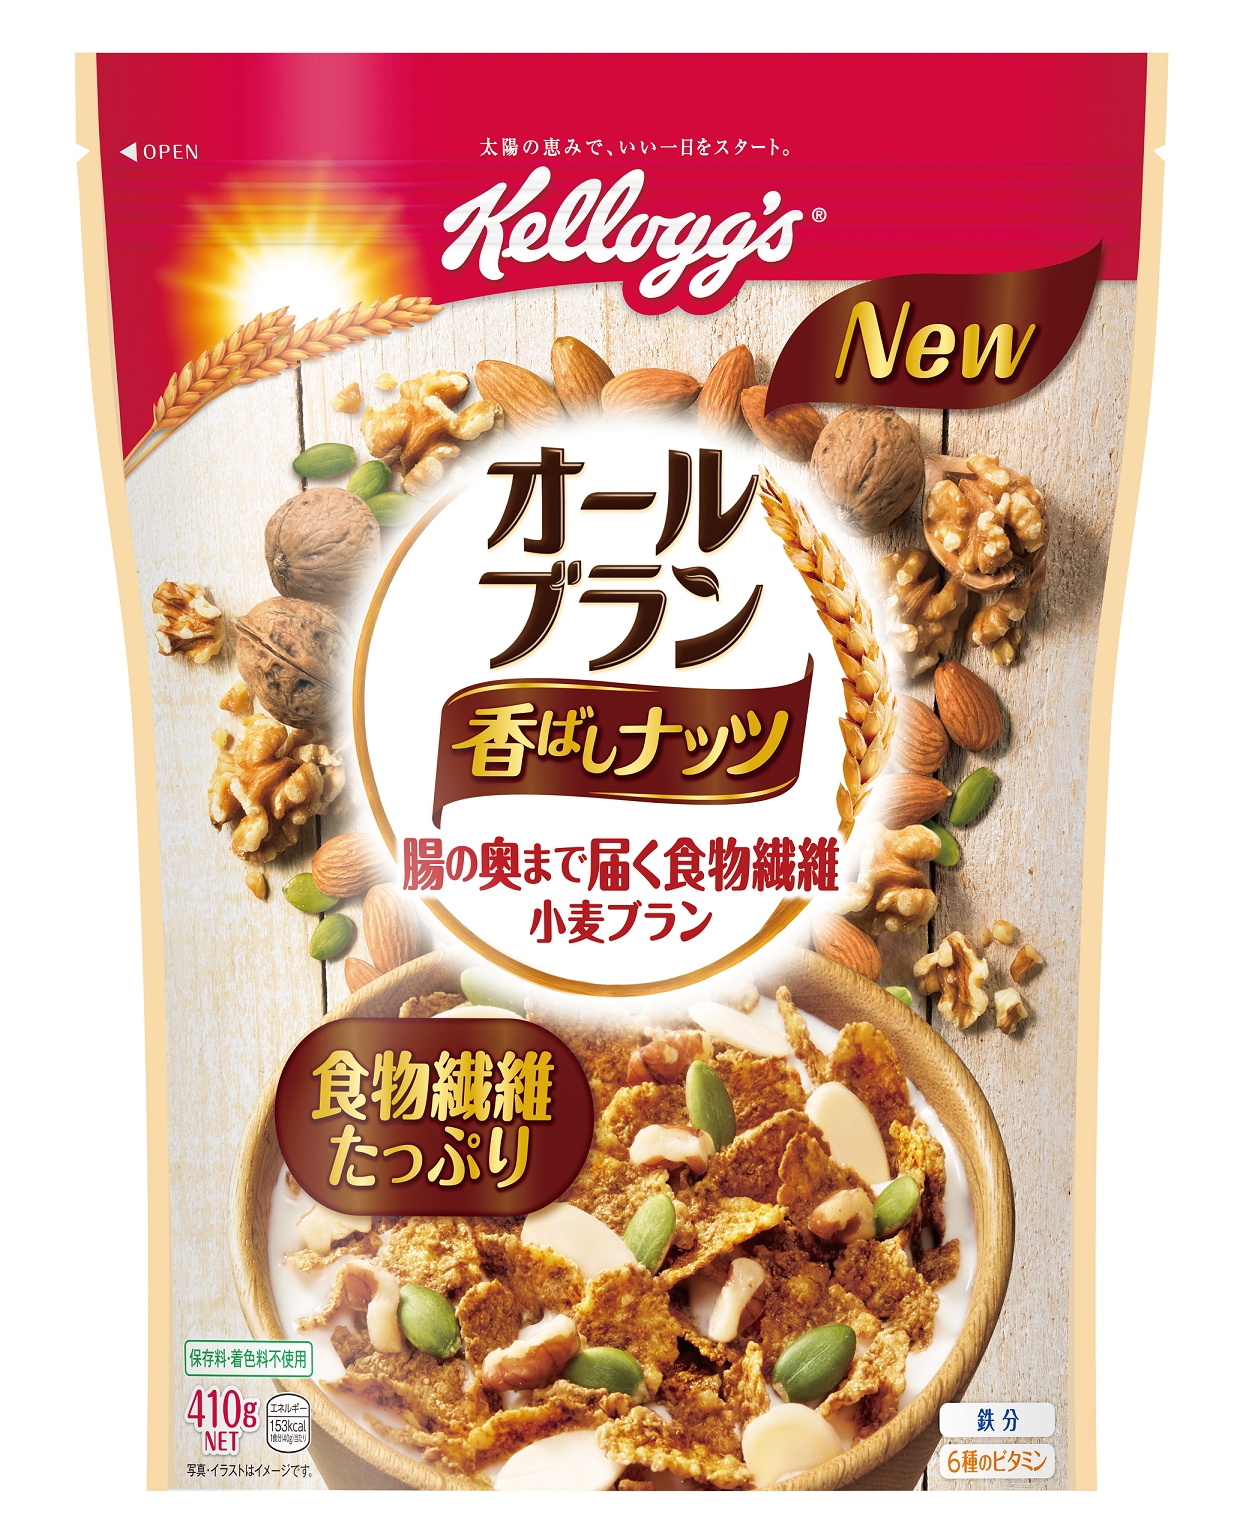 食物繊維が豊富で人気のナッツがたっぷり入った オールブラン 香ばしナッツ が新発売 日本ケロッグ合同会社のプレスリリース